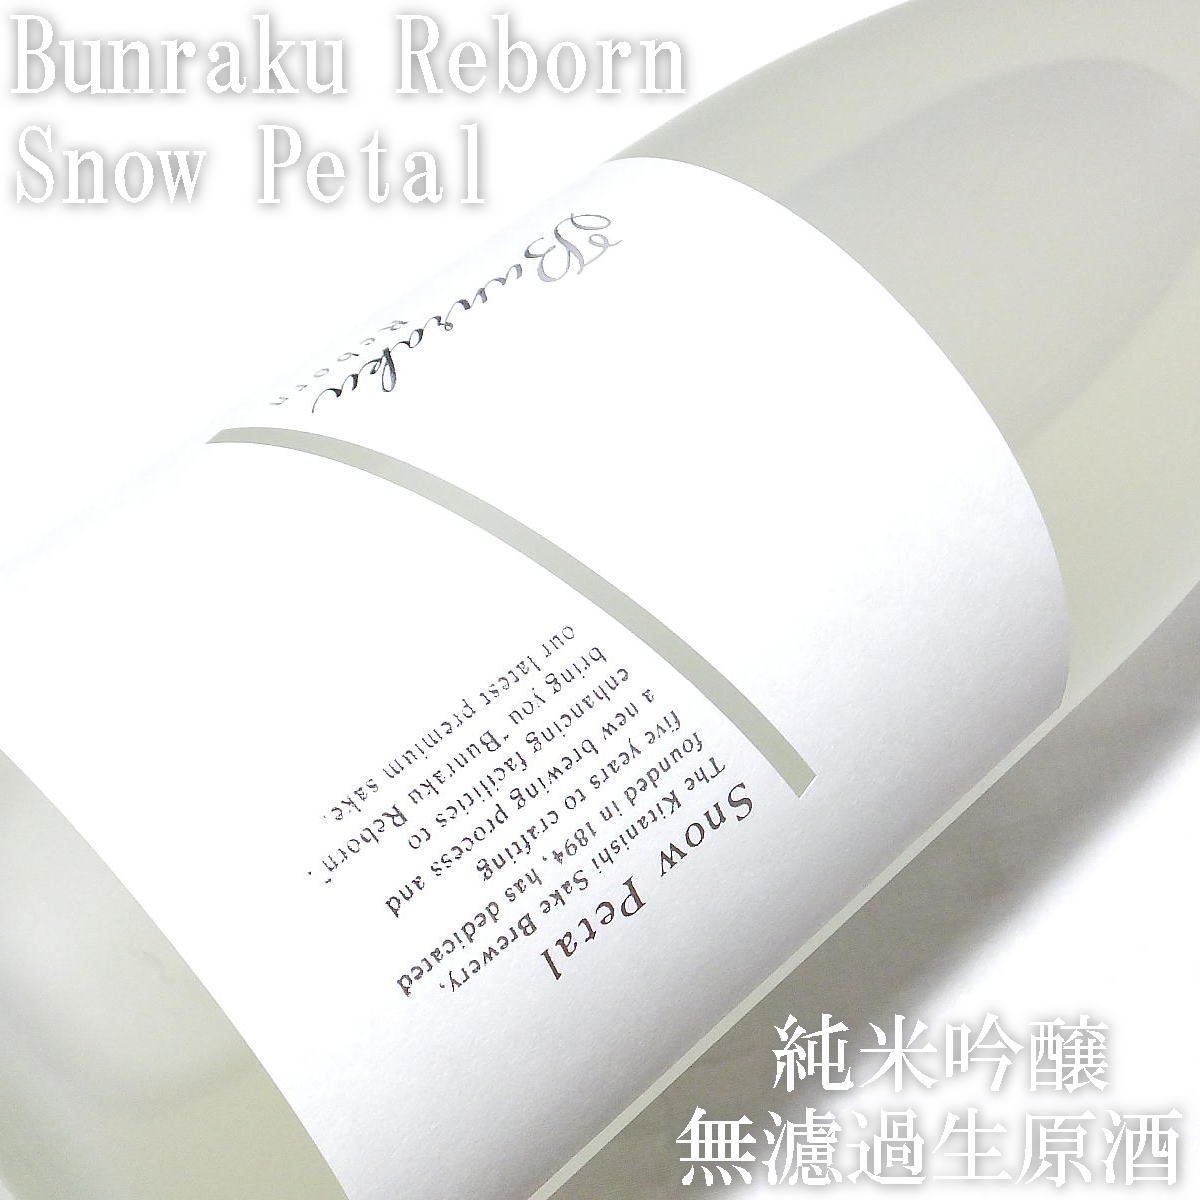 文楽 Bunraku Reborn Snow Petal 純米吟醸 生原酒1